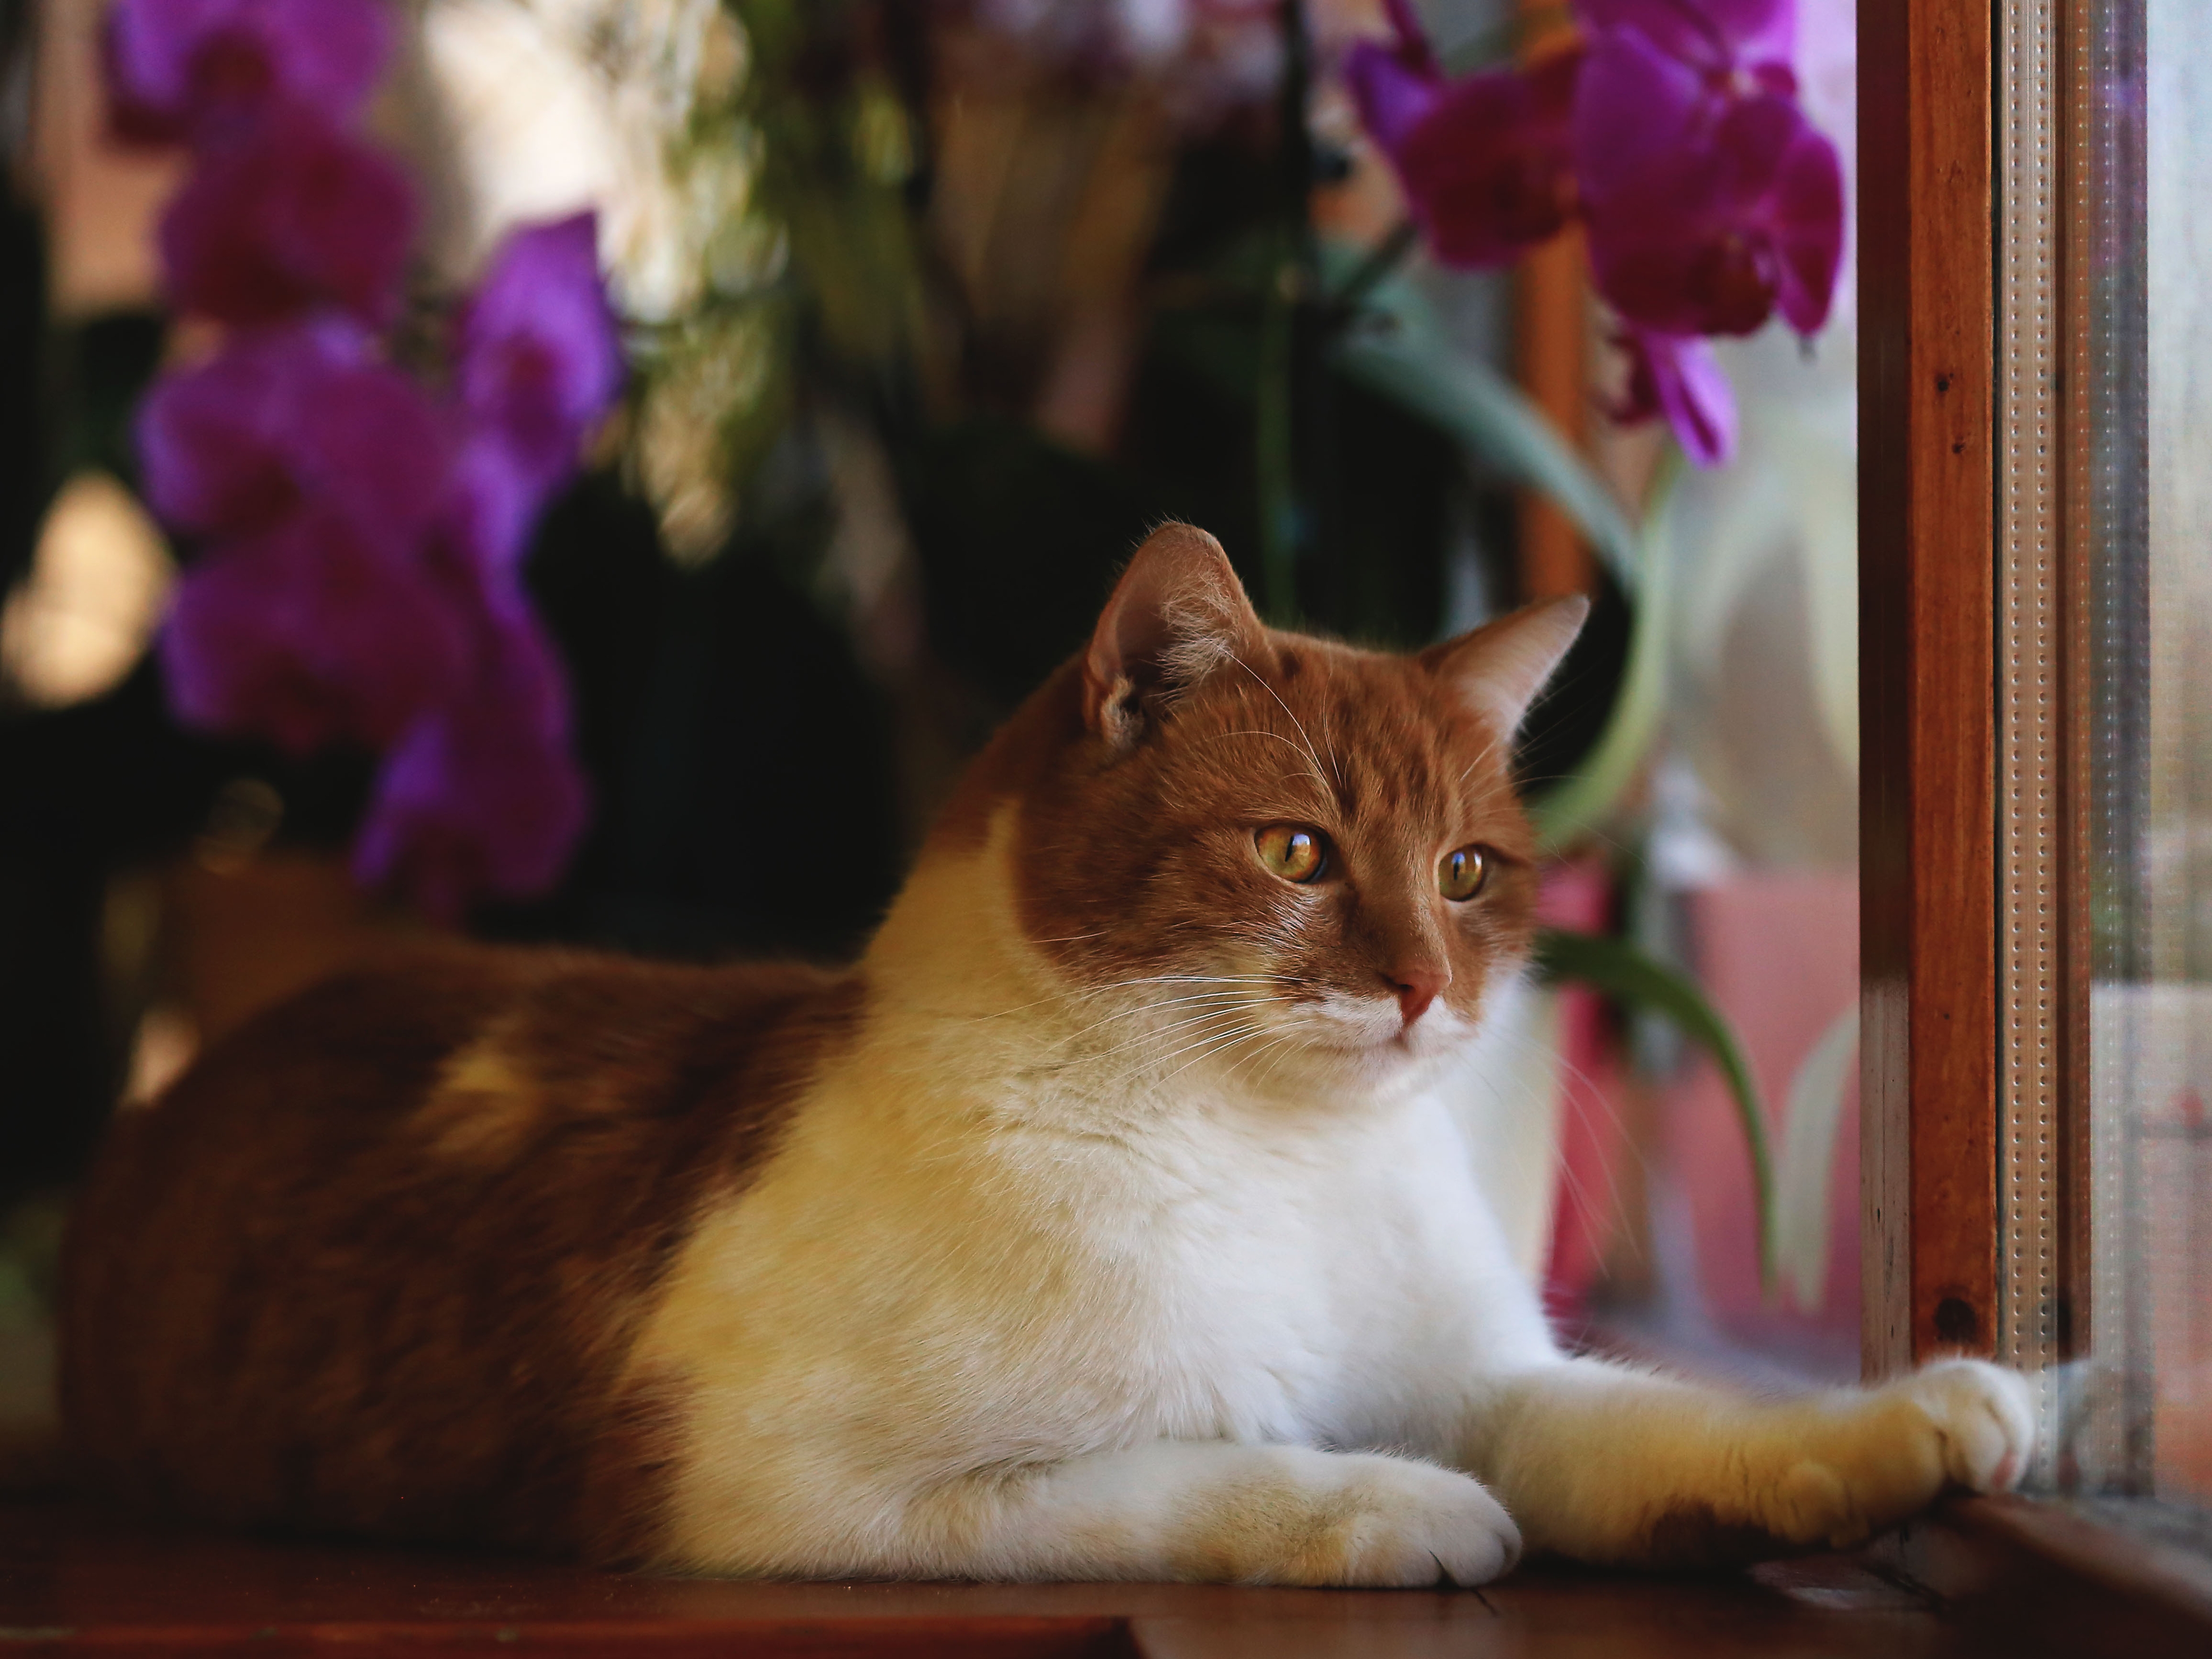 Image: Cat, red, muzzle, look, eyes, legs, fur, looking, window